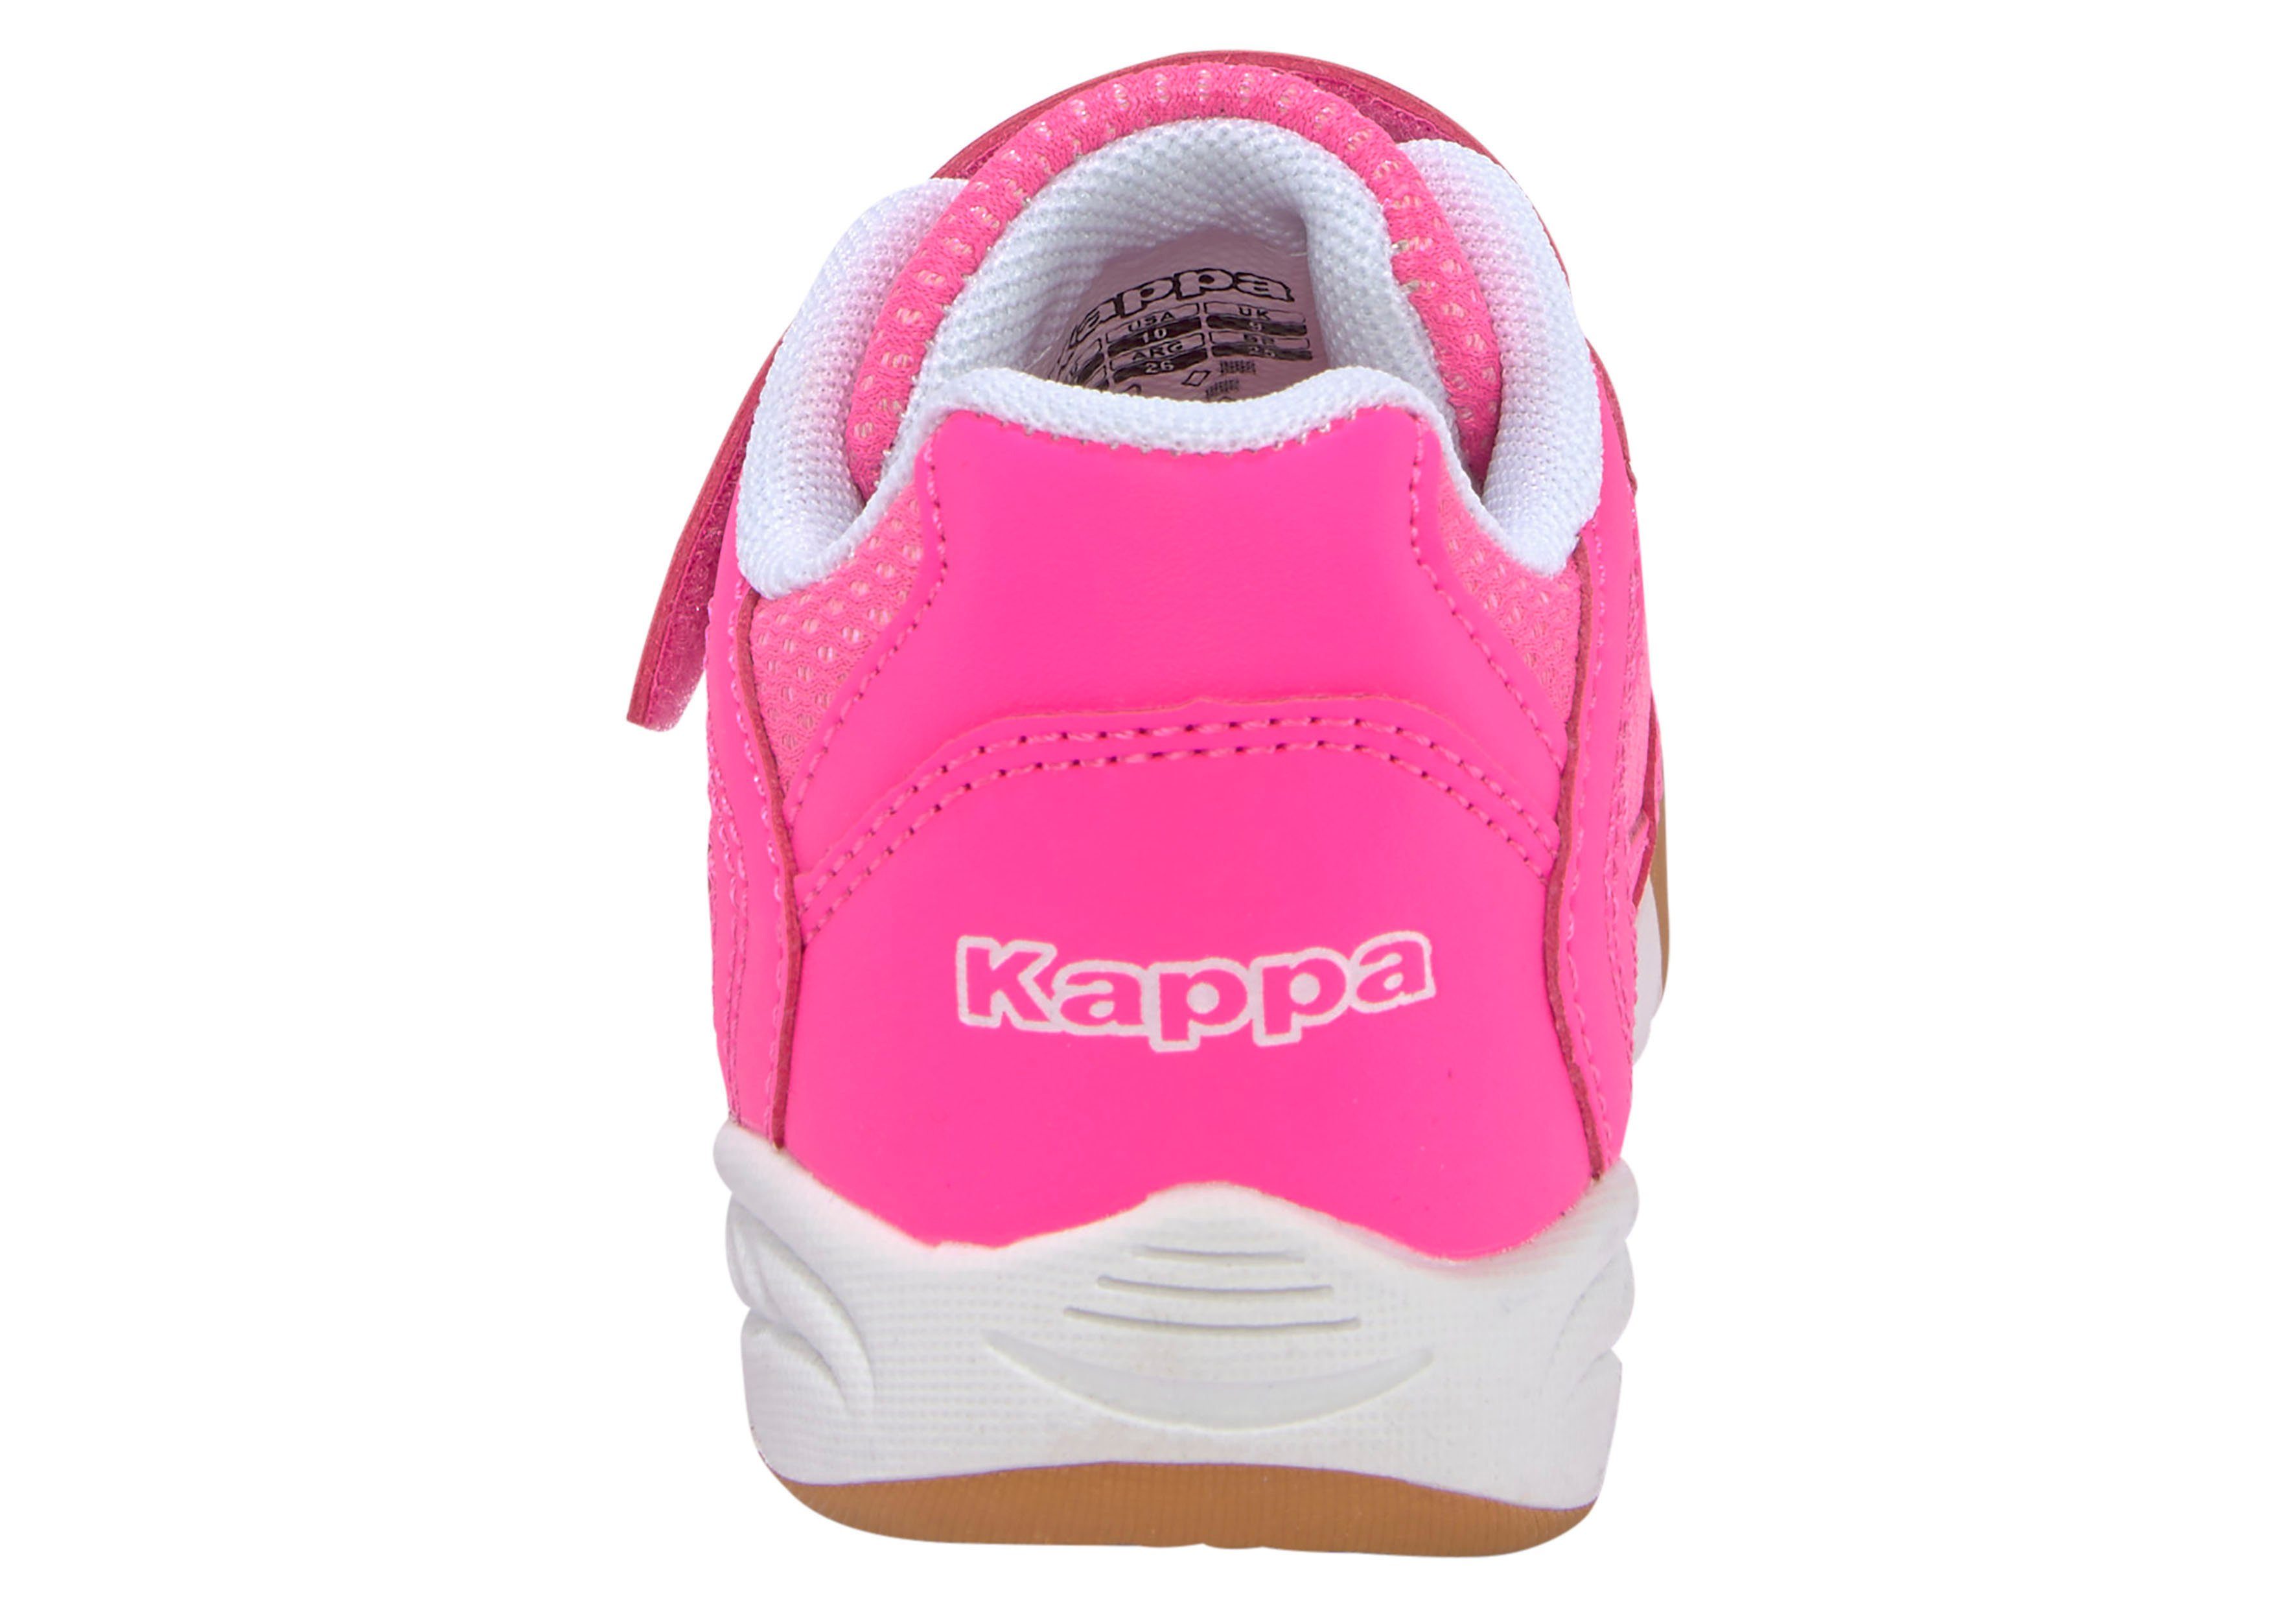 Kappa Hallenschuh pink